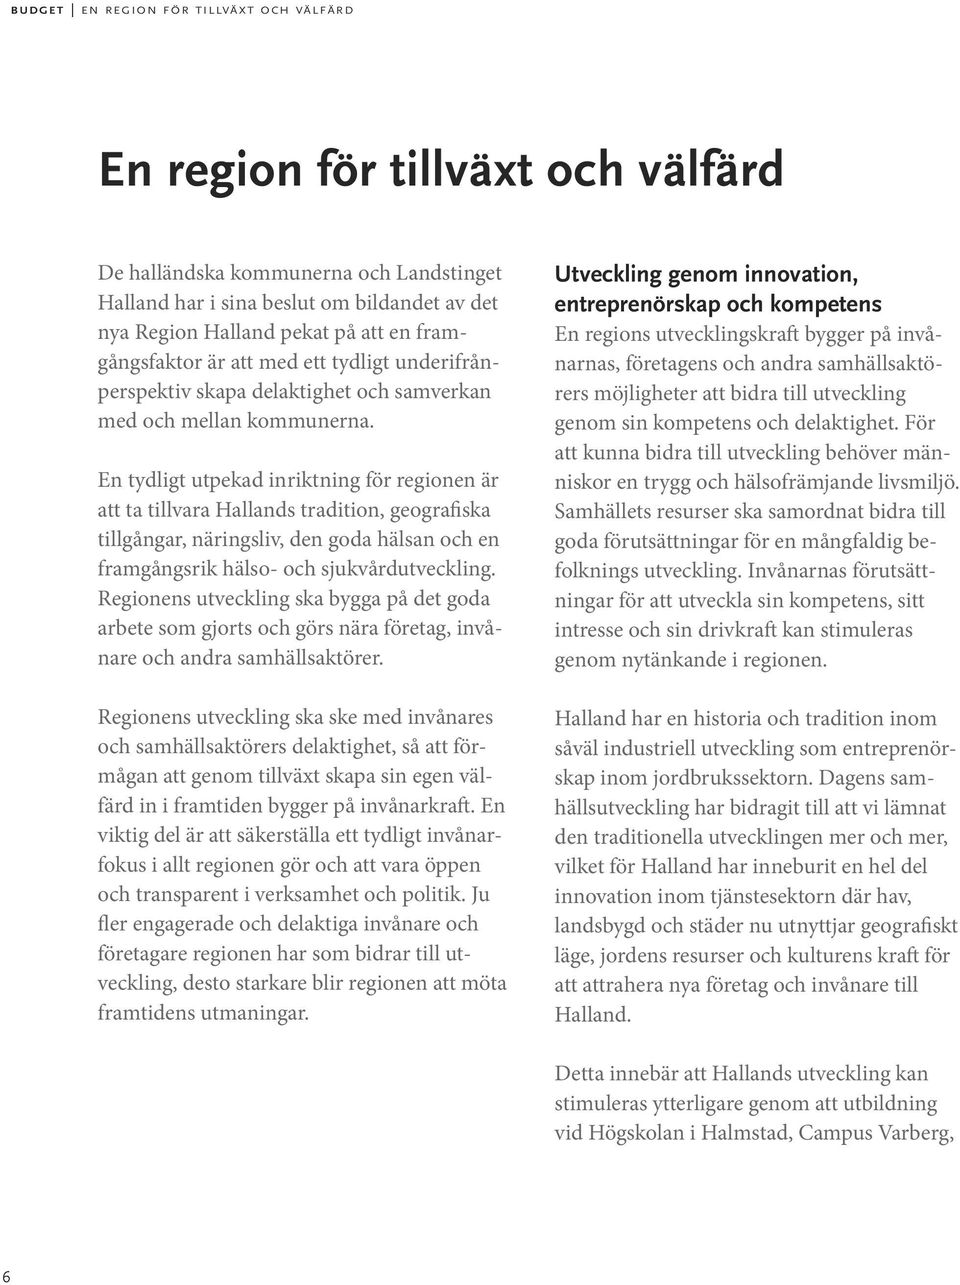 En tydligt utpekad inriktning för regionen är att ta tillvara Hallands tradition, geografiska tillgångar, näringsliv, den goda hälsan och en framgångsrik hälso- och sjukvårdutveckling.